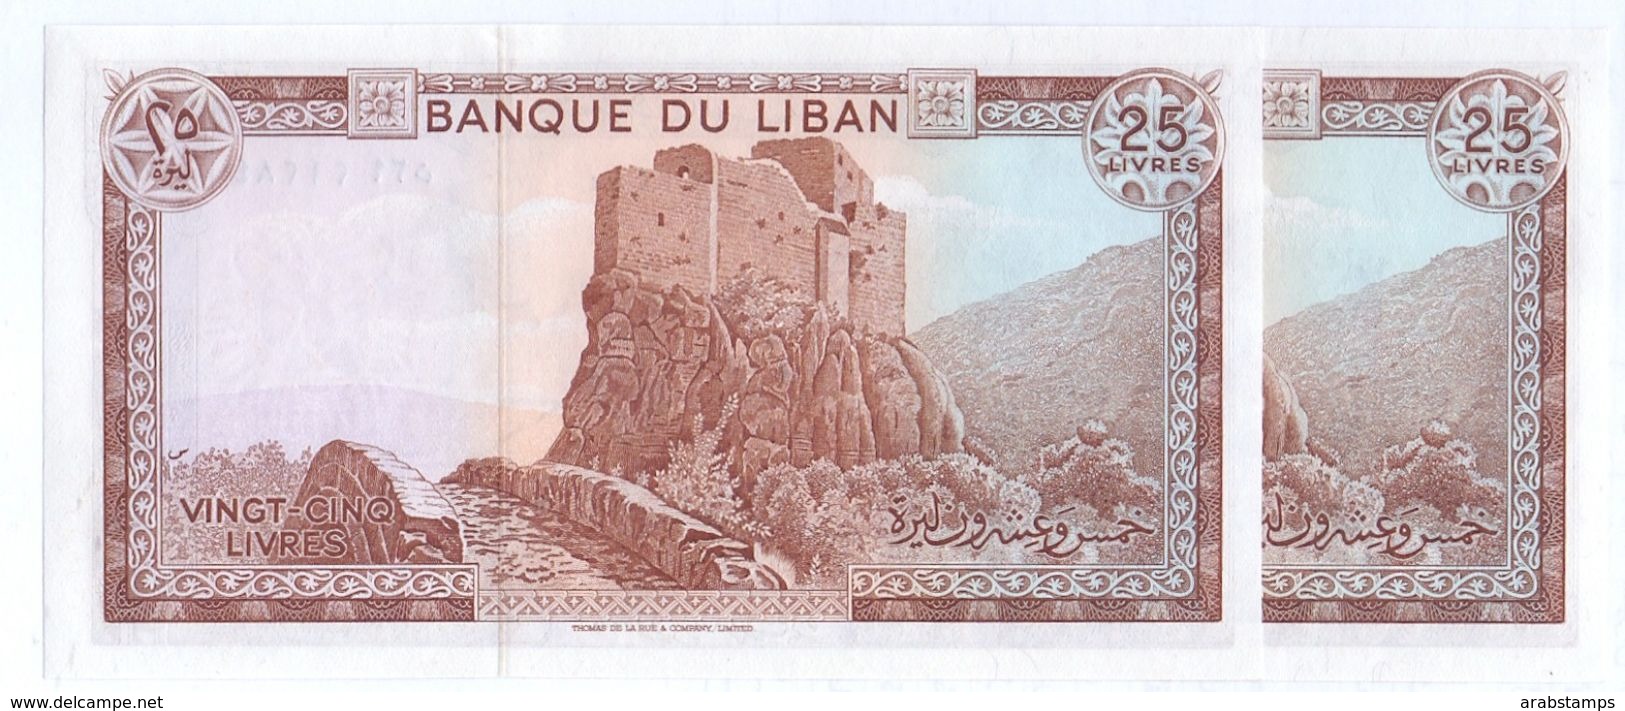 1983 Lebanon 25 Livre Lot 2 PCS Serial Numbers UNC  (Shipping Is $ 5.55) - Lebanon